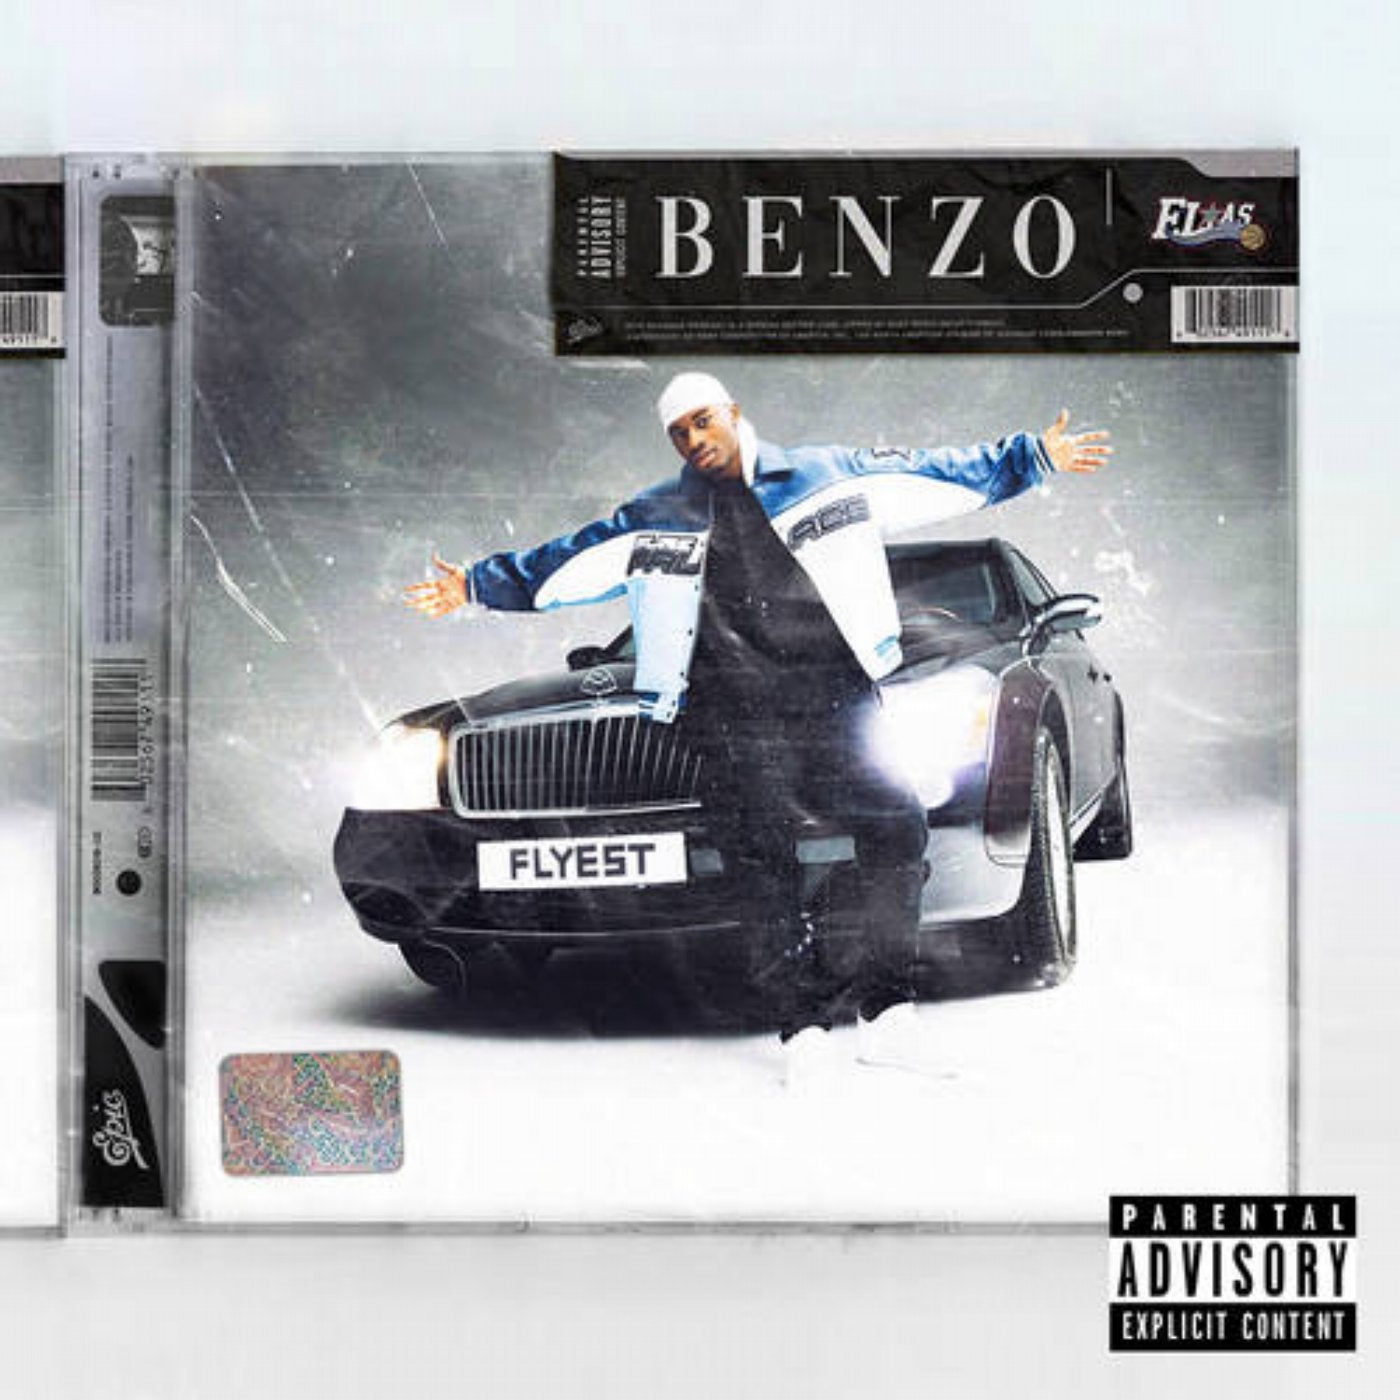 Benzo